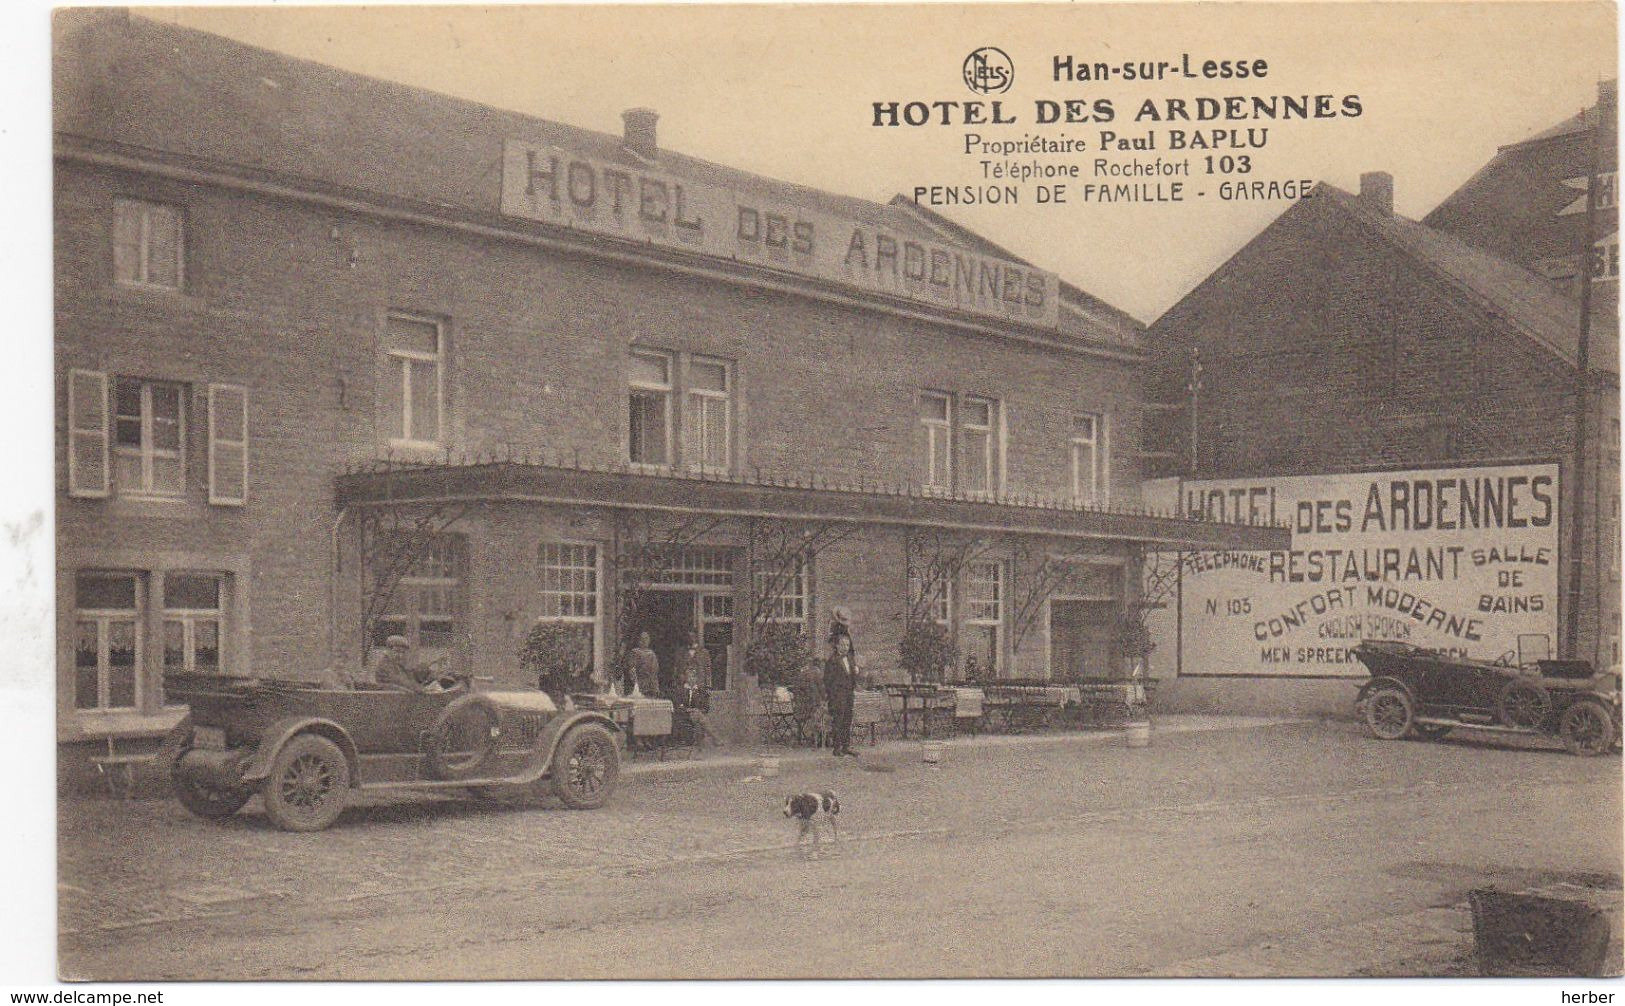 HAN-SUR-LESSE - 1910-1920 - Hotel Des Ardennes - Proprietaire Paul Baplu - Oldtimer Oude Auto - Rochefort